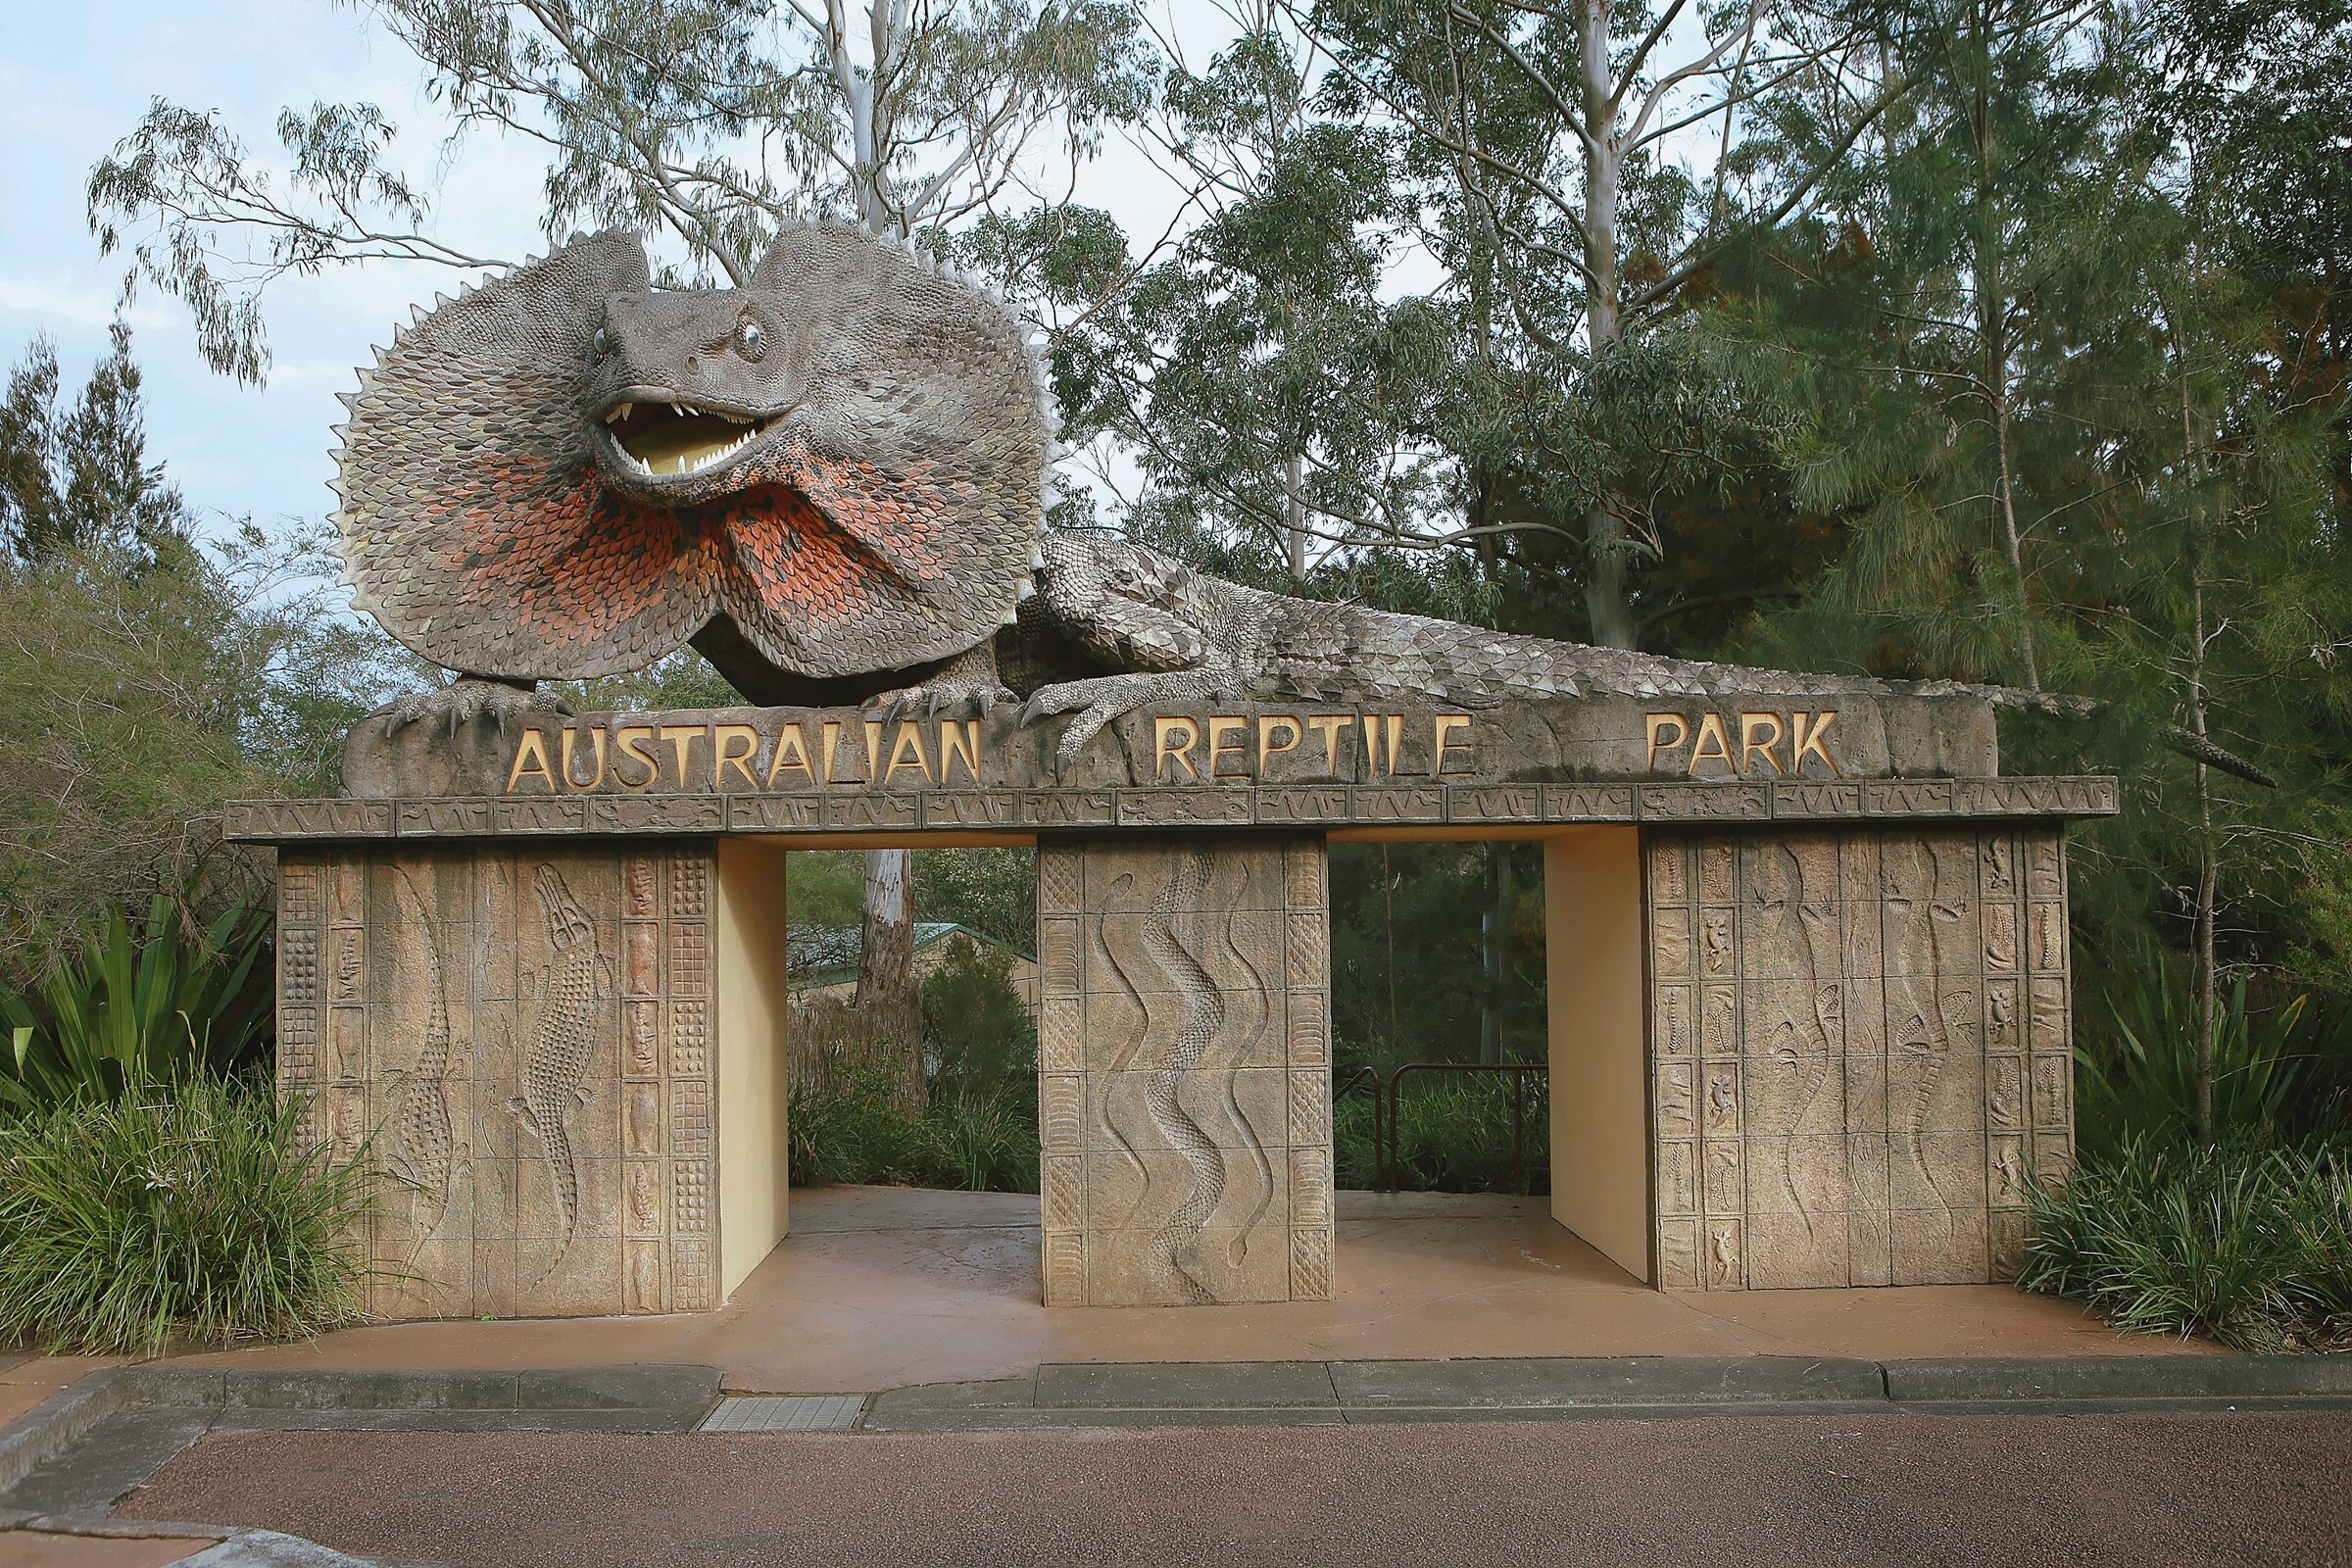 시드니 랩타일파크(Sydney reptile park)